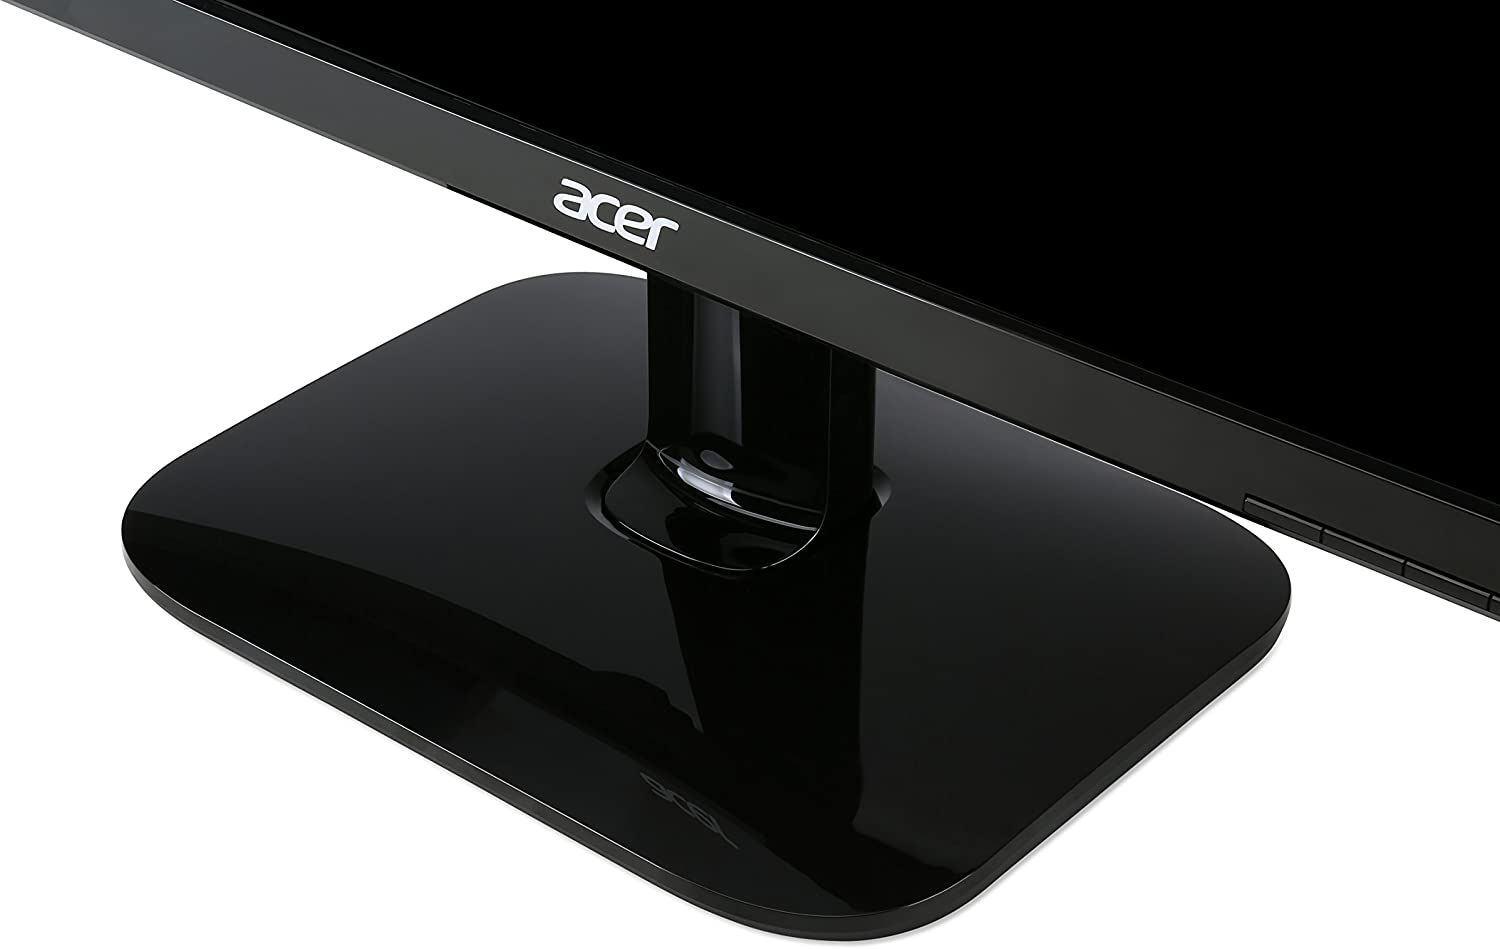 Acer Bi Full HD (1920 X 1080) TN Monitor (HDMI & VGA Port)